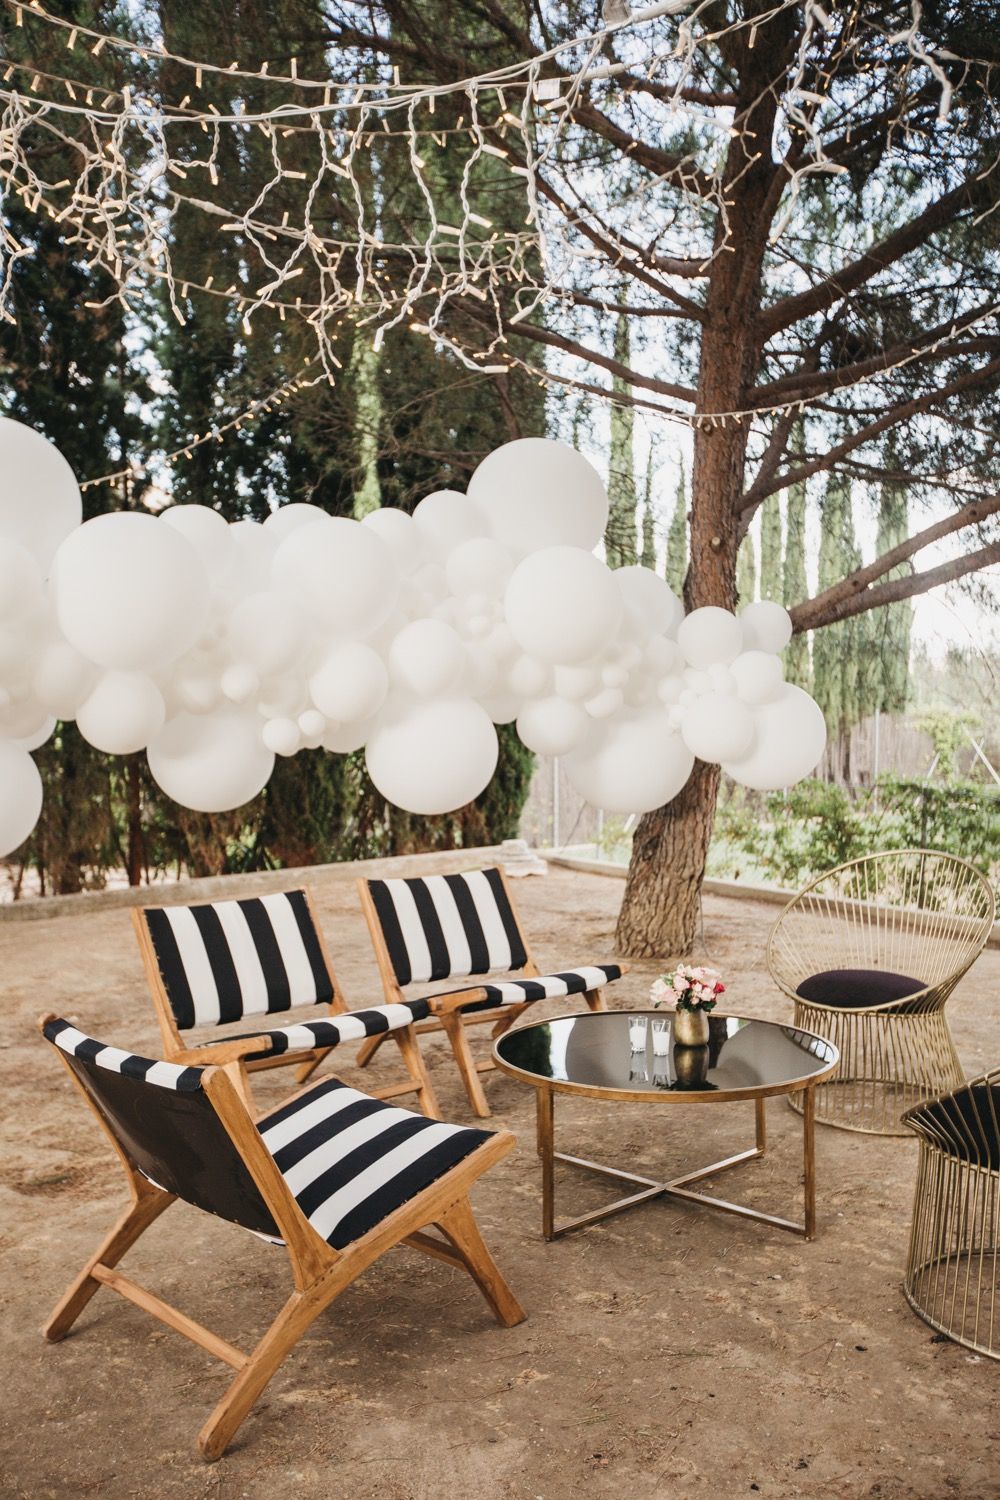 Una nube blanca de globos de que parecía flotar entre los árboles, creada por GlobosPimPamPum, formaba parte de la decoración de las zonas lounge, sencillas pero rompedoras y marcadas por los tonos de la fiesta, se convirtió en un inesperado photocall al caer la noche.